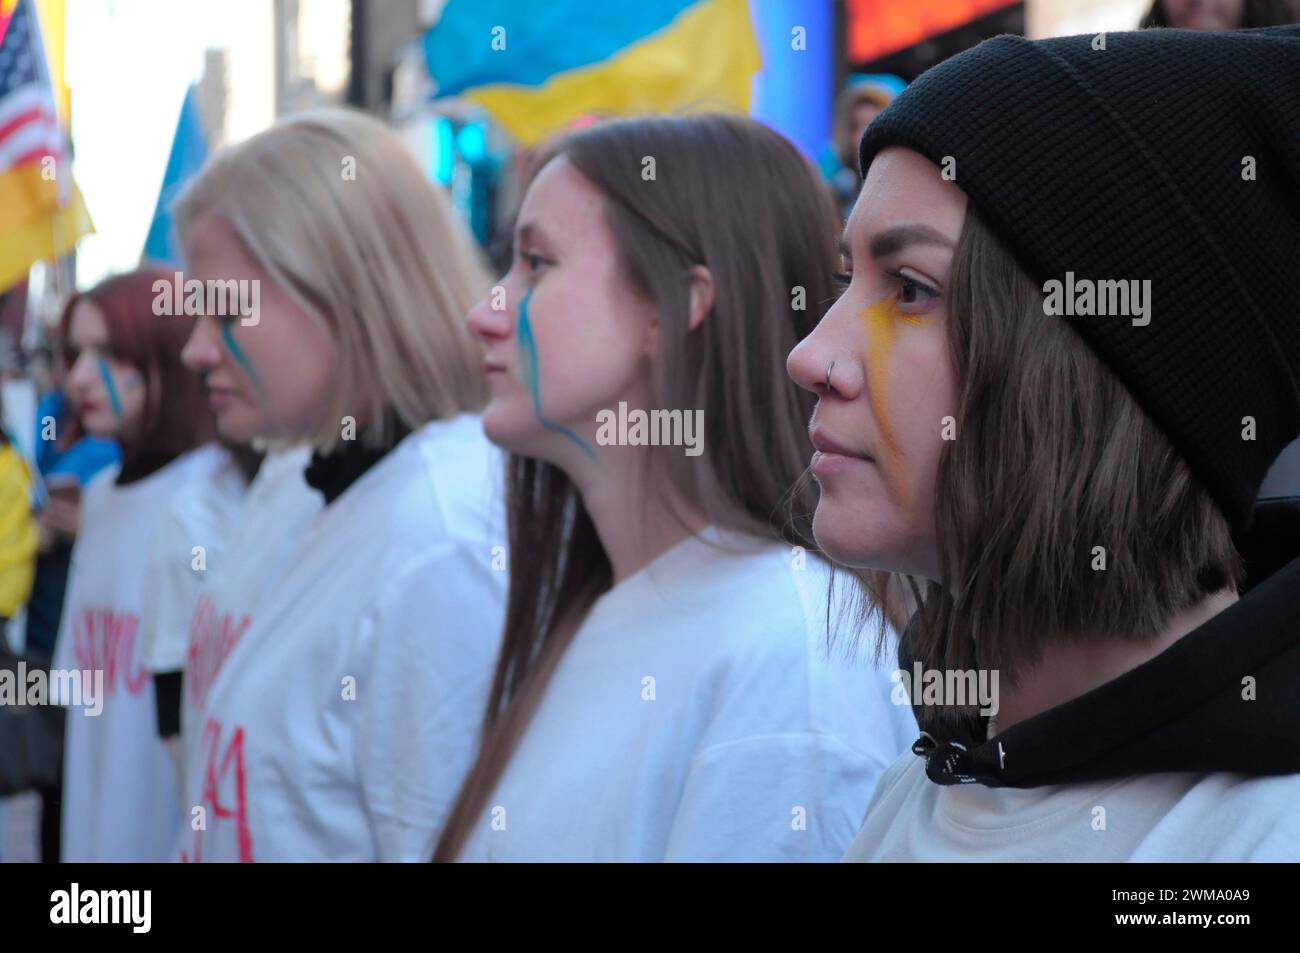 Des manifestants pro-Ukraine, portant chacun un t-shirt avec le nom d'une ville ukrainienne écrit dessus, se rassemblent à Times Square. Des manifestants se sont rassemblés à Manhattan, New York City, à l'occasion des deux ans de l'invasion russe de l'Ukraine. Les manifestants ont condamné l'invasion et se sont opposés au président russe Vladimir Poutine. Le week-end dernier, les forces russes ont capturé la ville ukrainienne orientale d'Avdiivka située sur la ligne de front. La perte de la ville survient alors qu'un paquet d'aide de 60 milliards de dollars pour l'Ukraine de la part des États-Unis a été bloqué à la suite de désaccords au Congrès. Président ukrainien, Volodymyr Zelen Banque D'Images